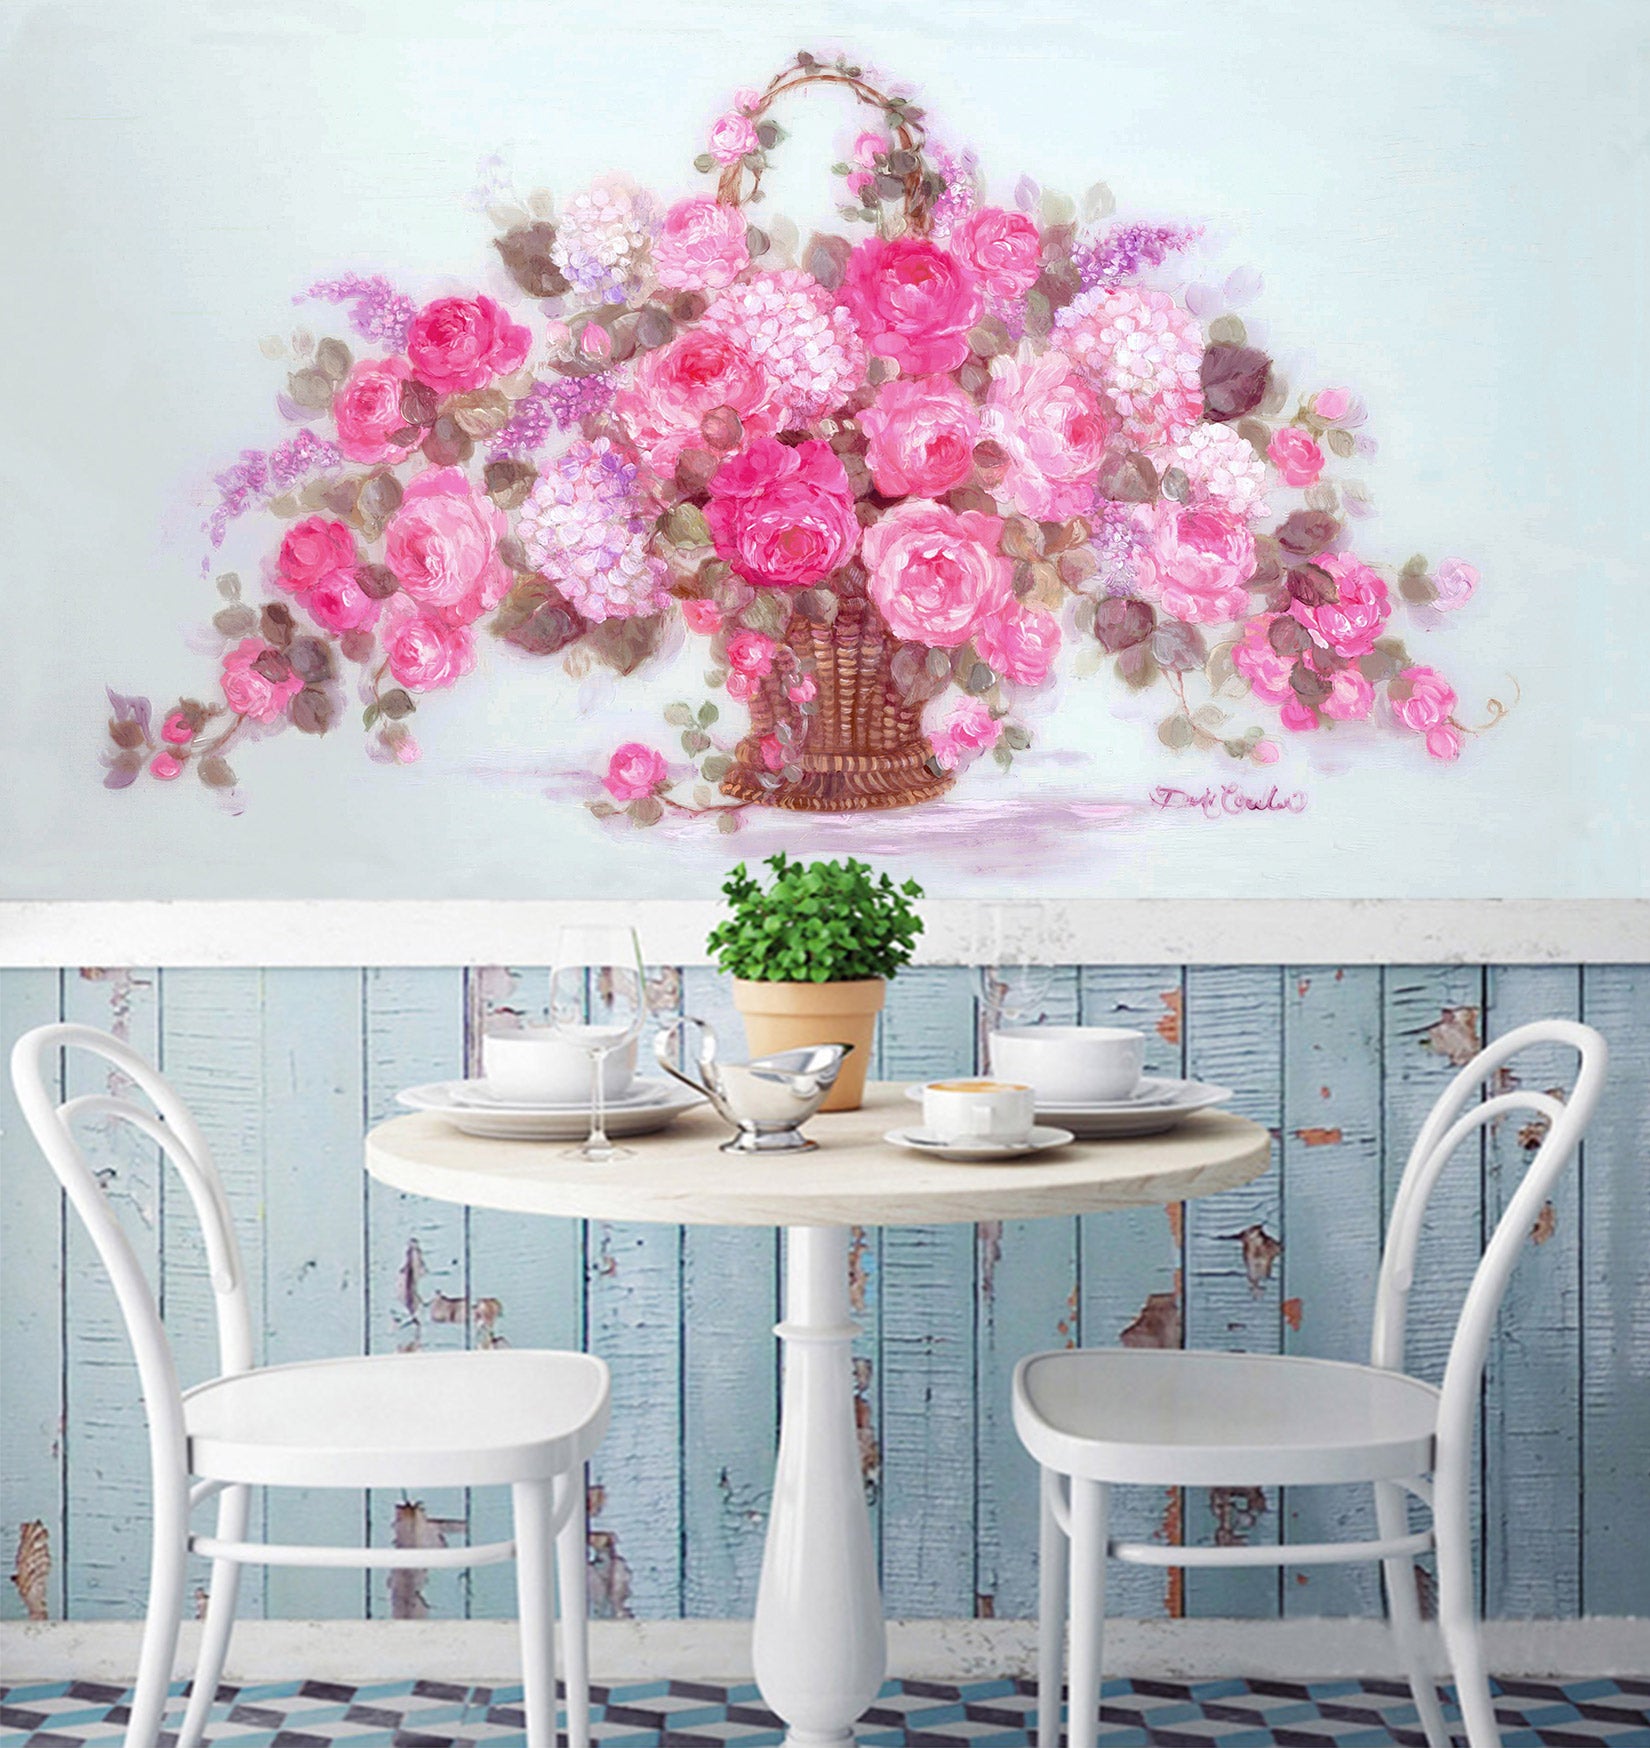 3D Pink Flower Basket 3176 Debi Coules Wall Mural Wall Murals